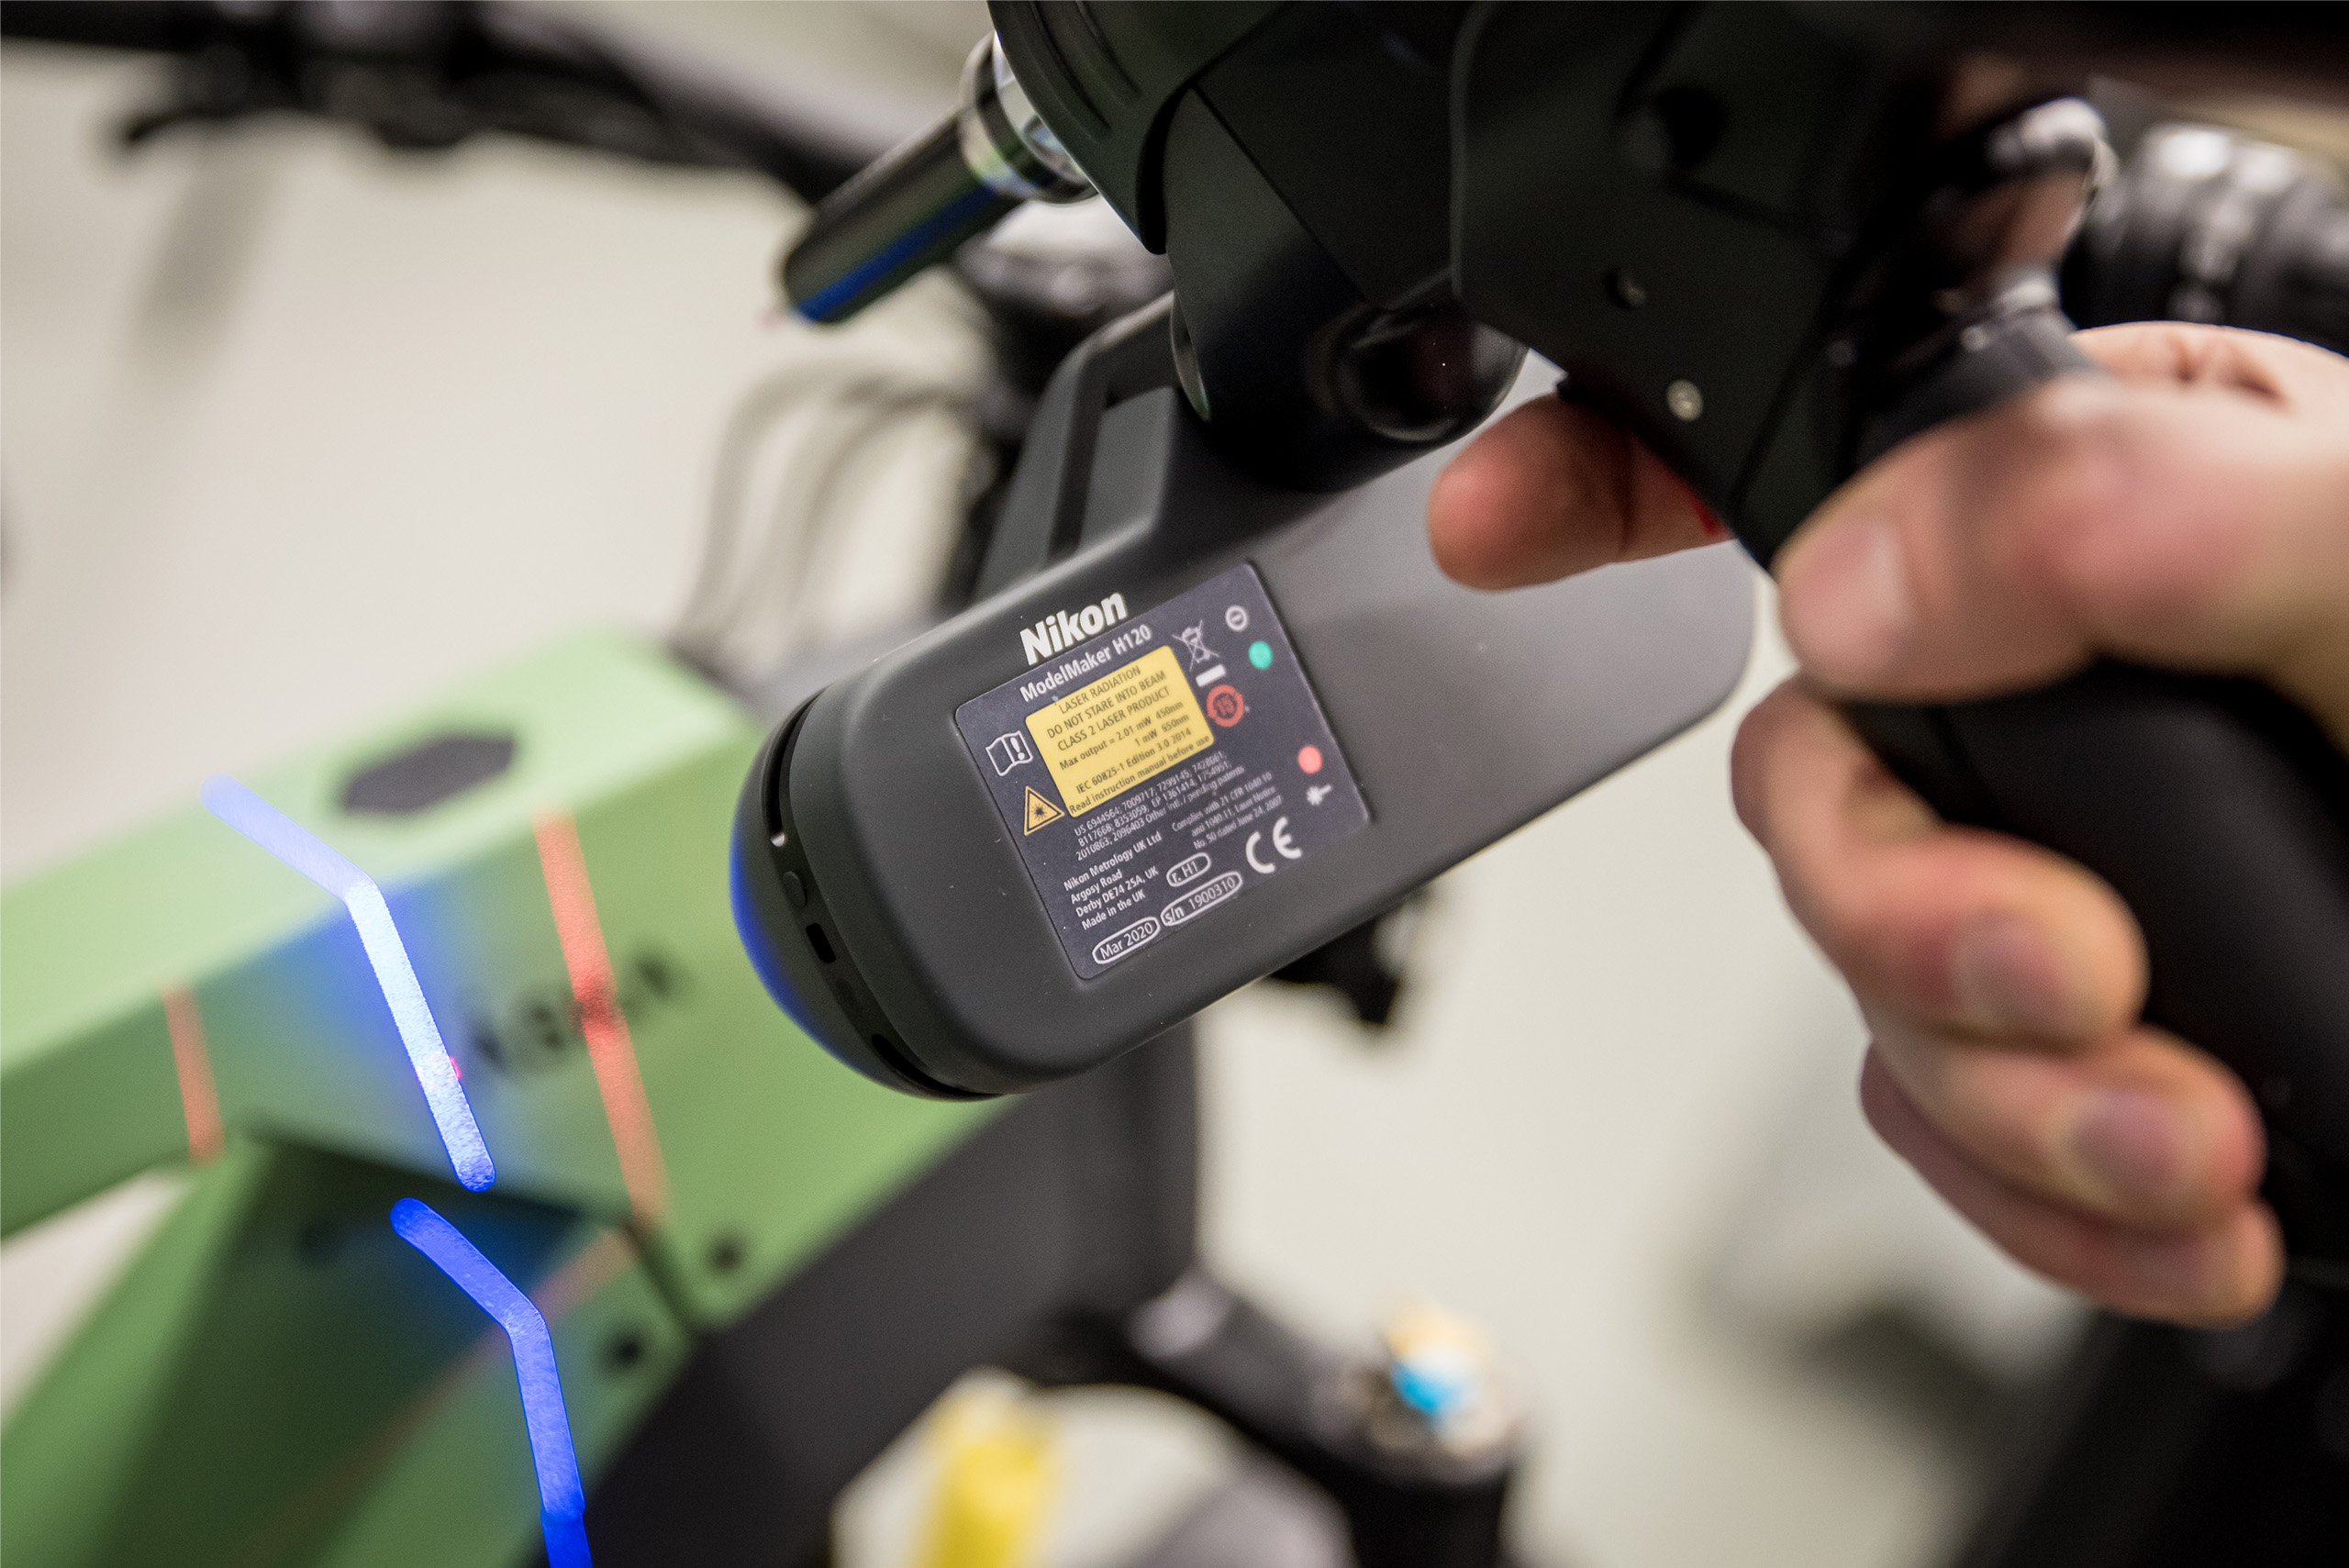 ASKA Bike scannes with a H120 Nikon Laser Scanner